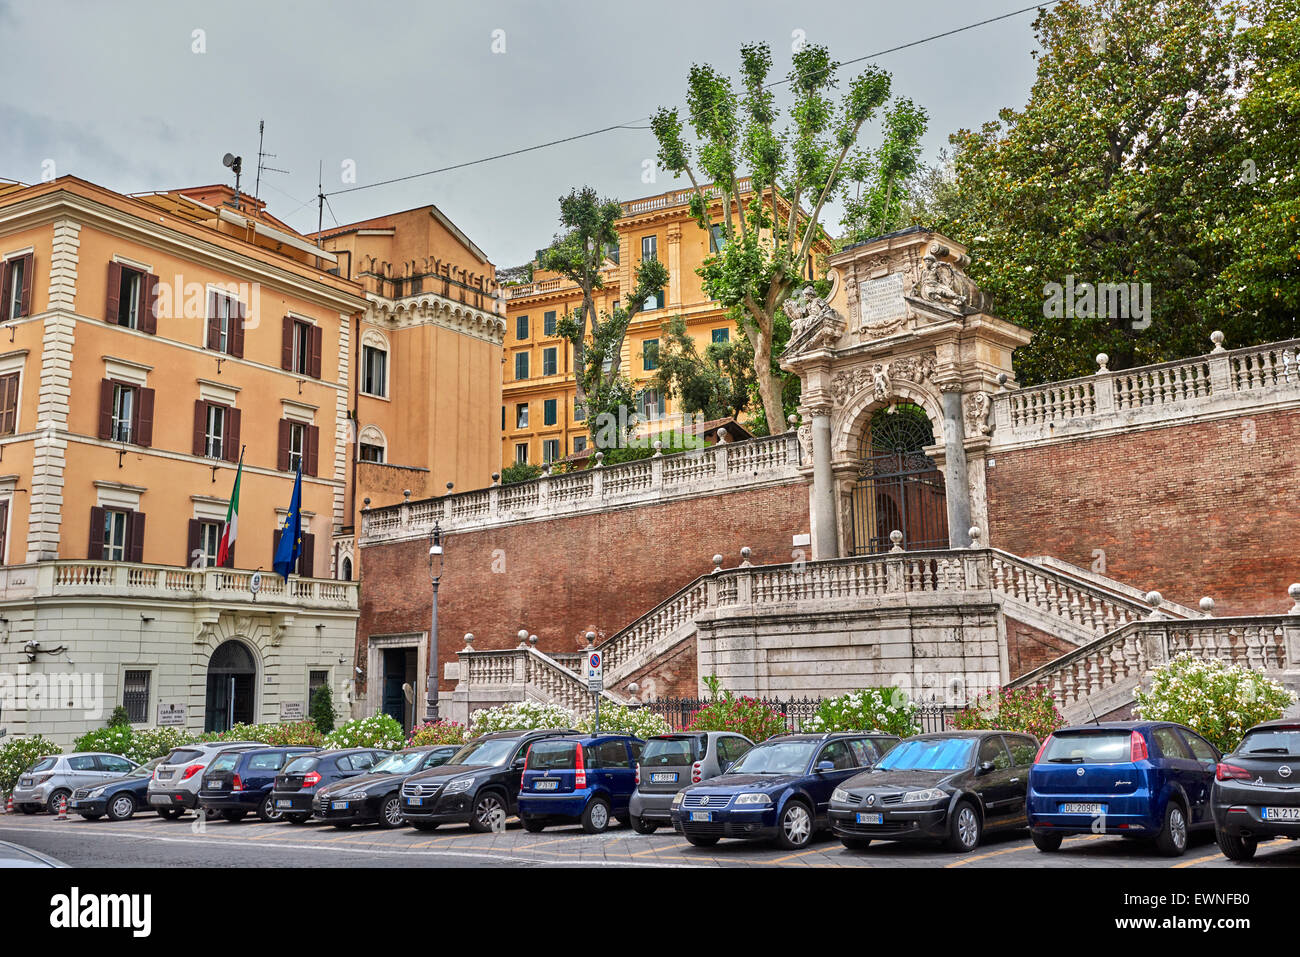 Rome est une ville et une commune italienne de l'Italie. Rome est la capitale de l'Italie et de la région du Latium. Banque D'Images